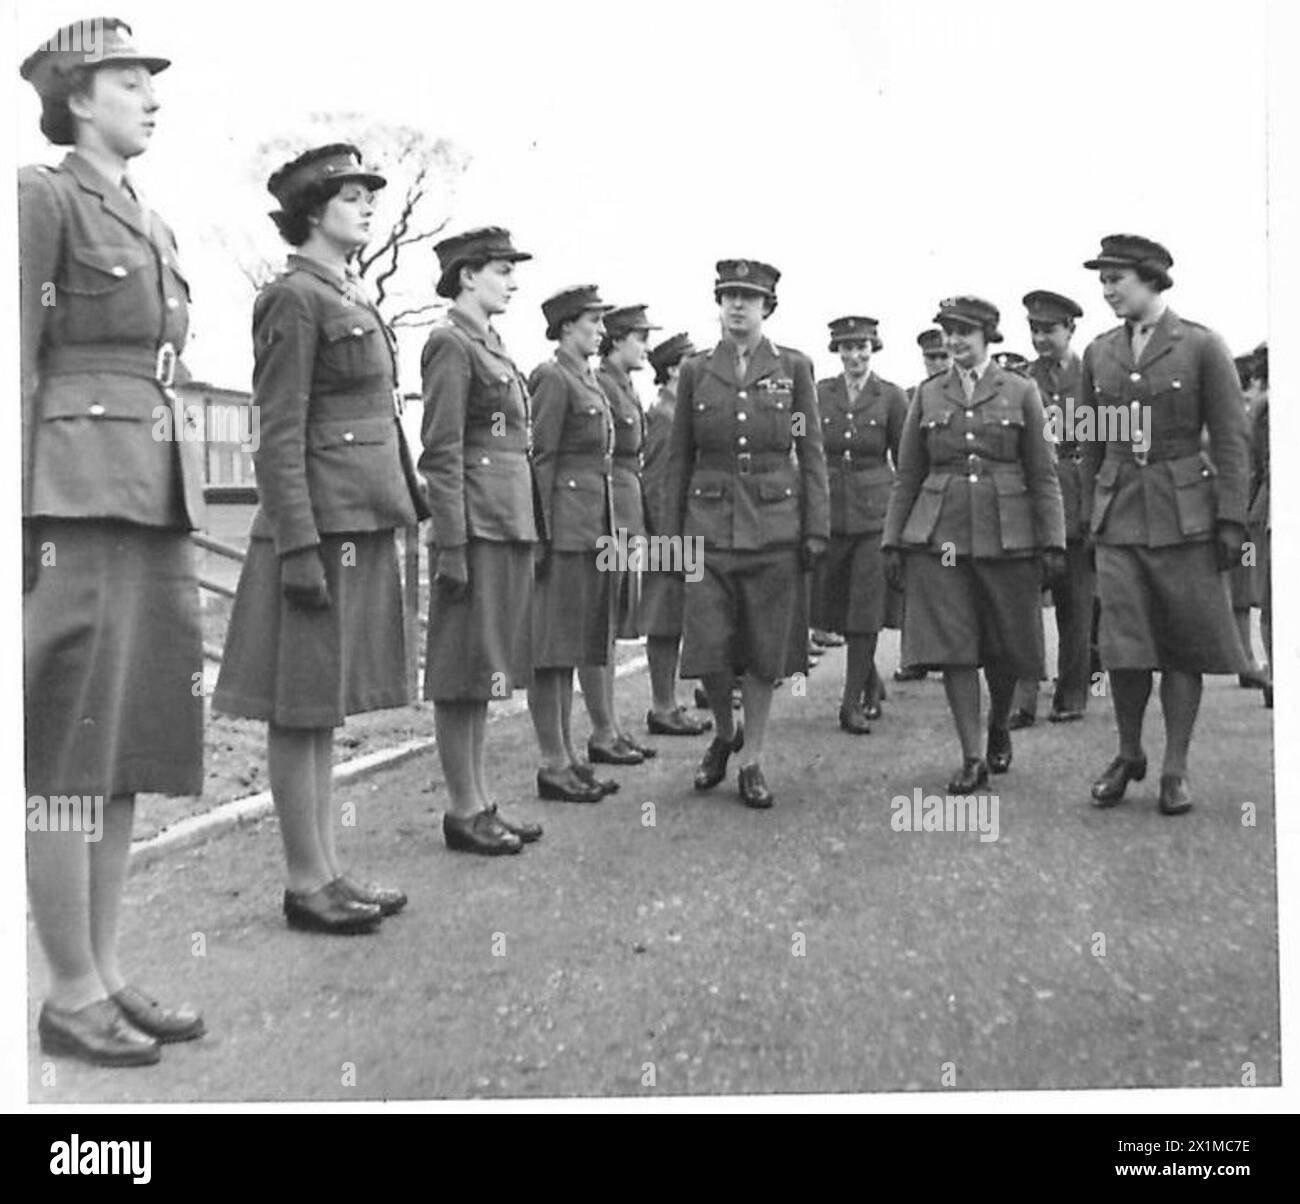 DIE PRINZESSIN ROYAL BESUCHT DAS ARTILLANCE DEPOT - HRH die Prinzessin Royal begleitet von ATS-Offizieren, inspiziert ATS-Hilfskräfte im Depot der britischen Armee Stockfoto